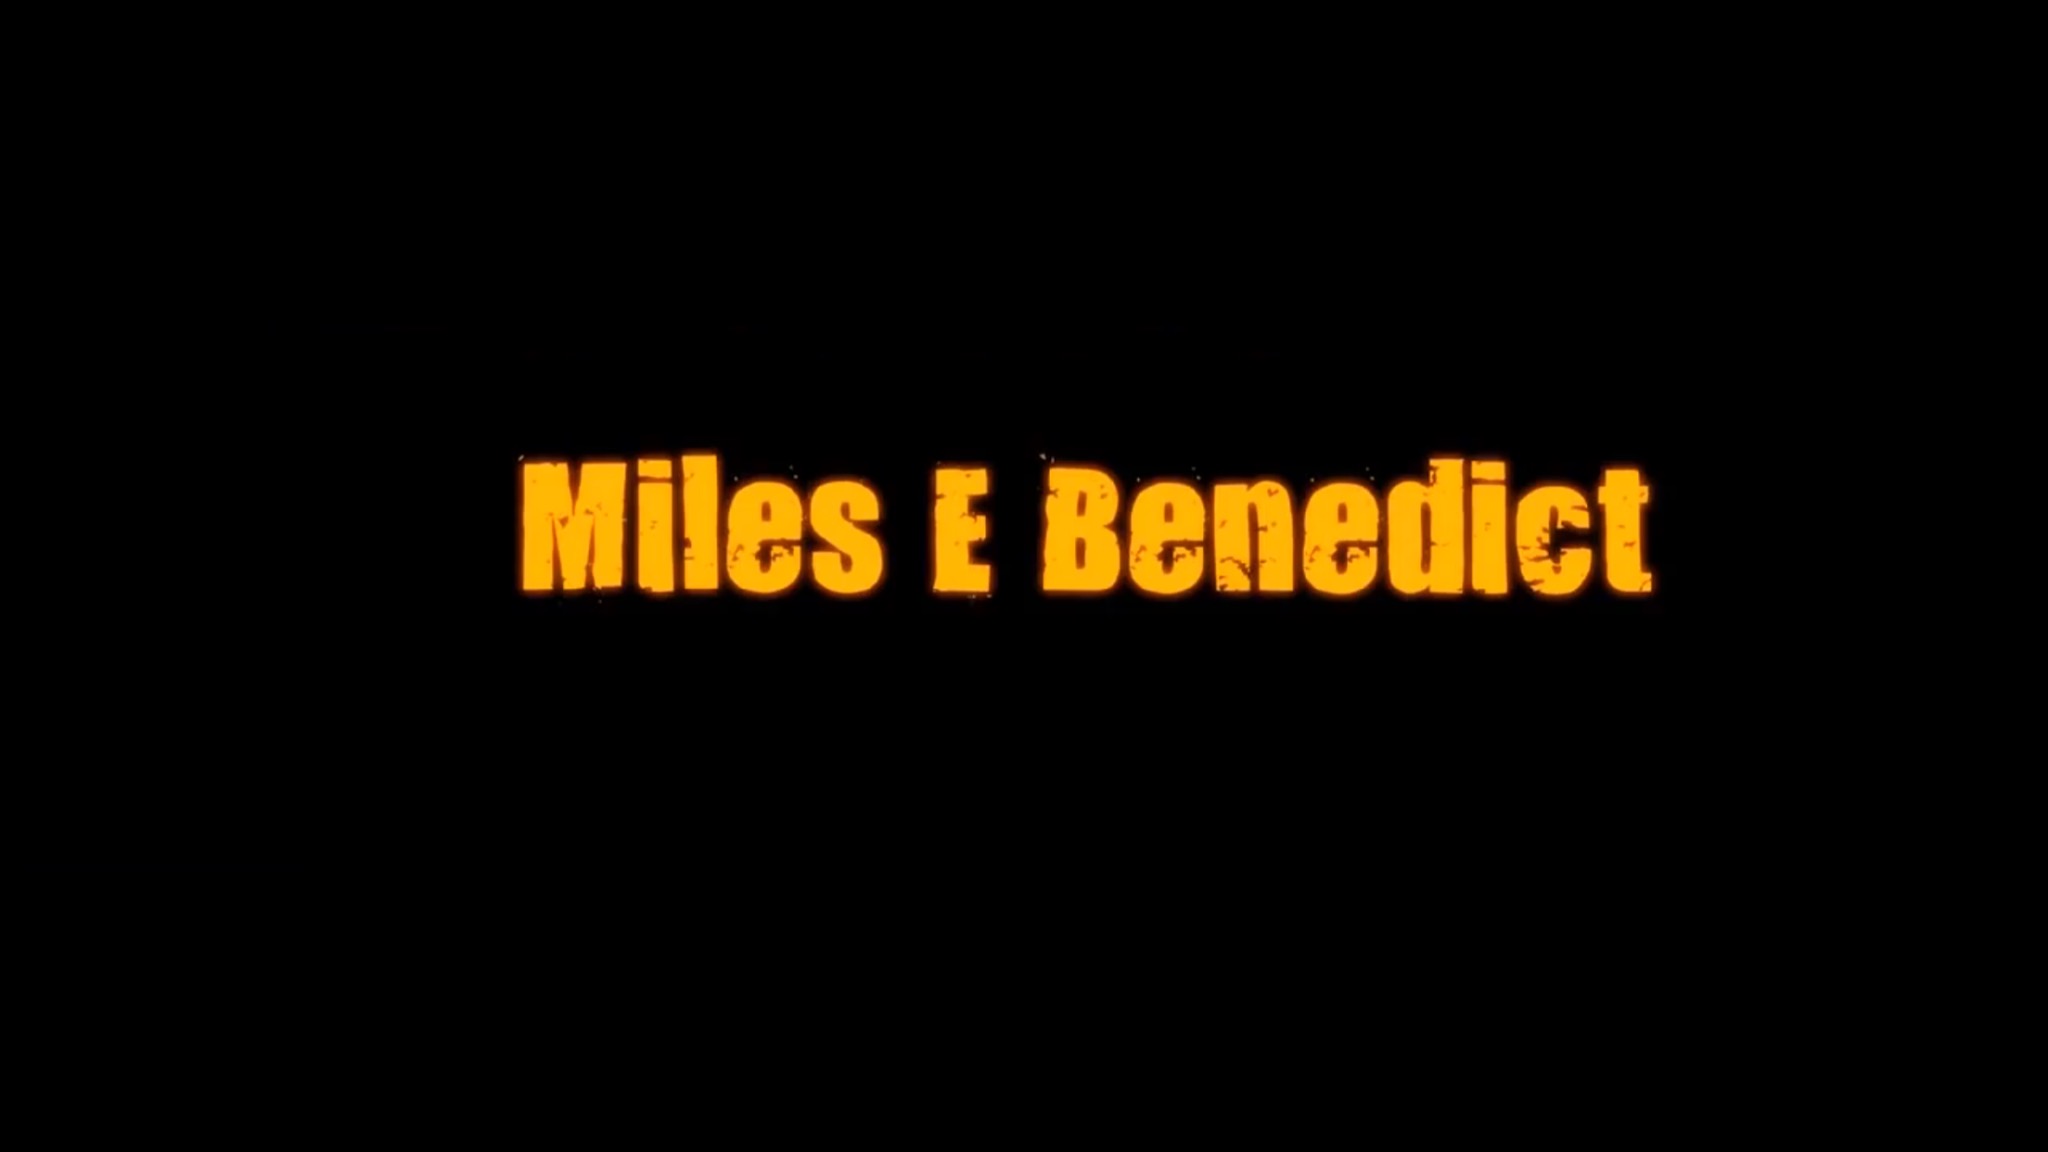 Miles E. Benedict